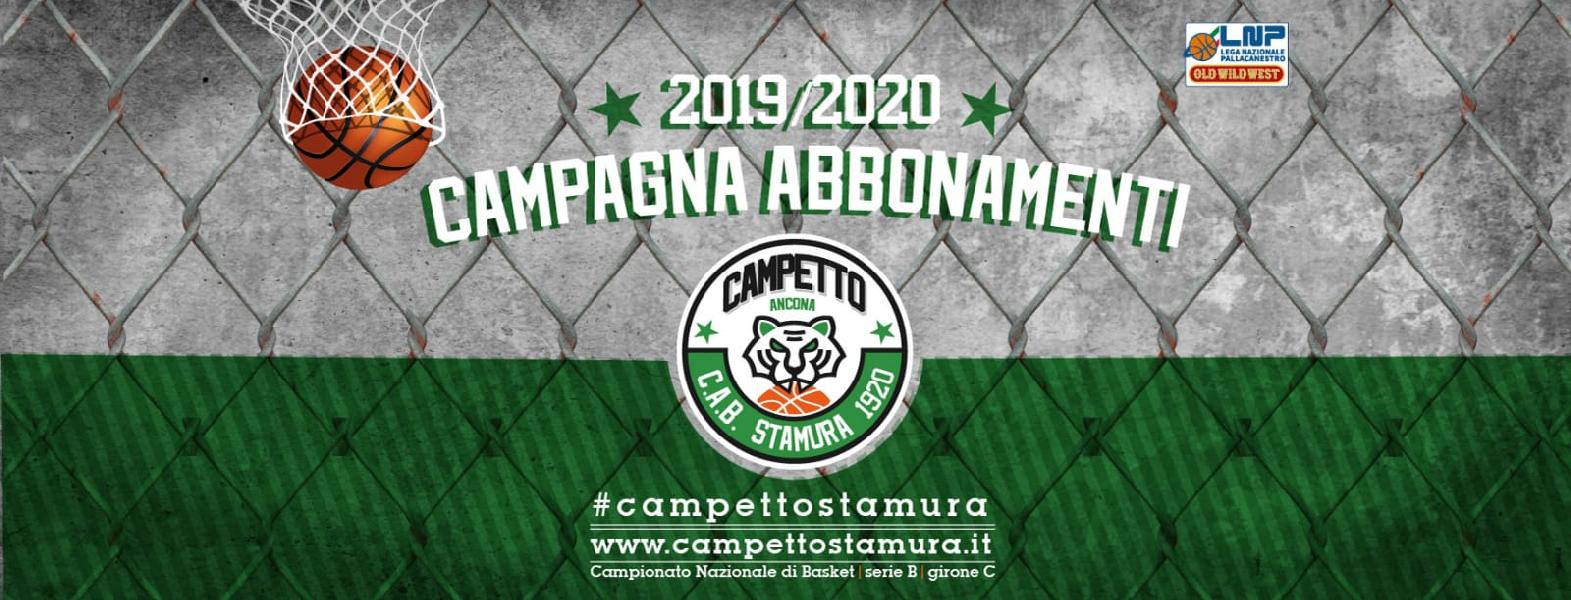 https://www.basketmarche.it/immagini_articoli/16-09-2019/campagna-abbonamenti-campetto-ancona-dettagli-600.jpg